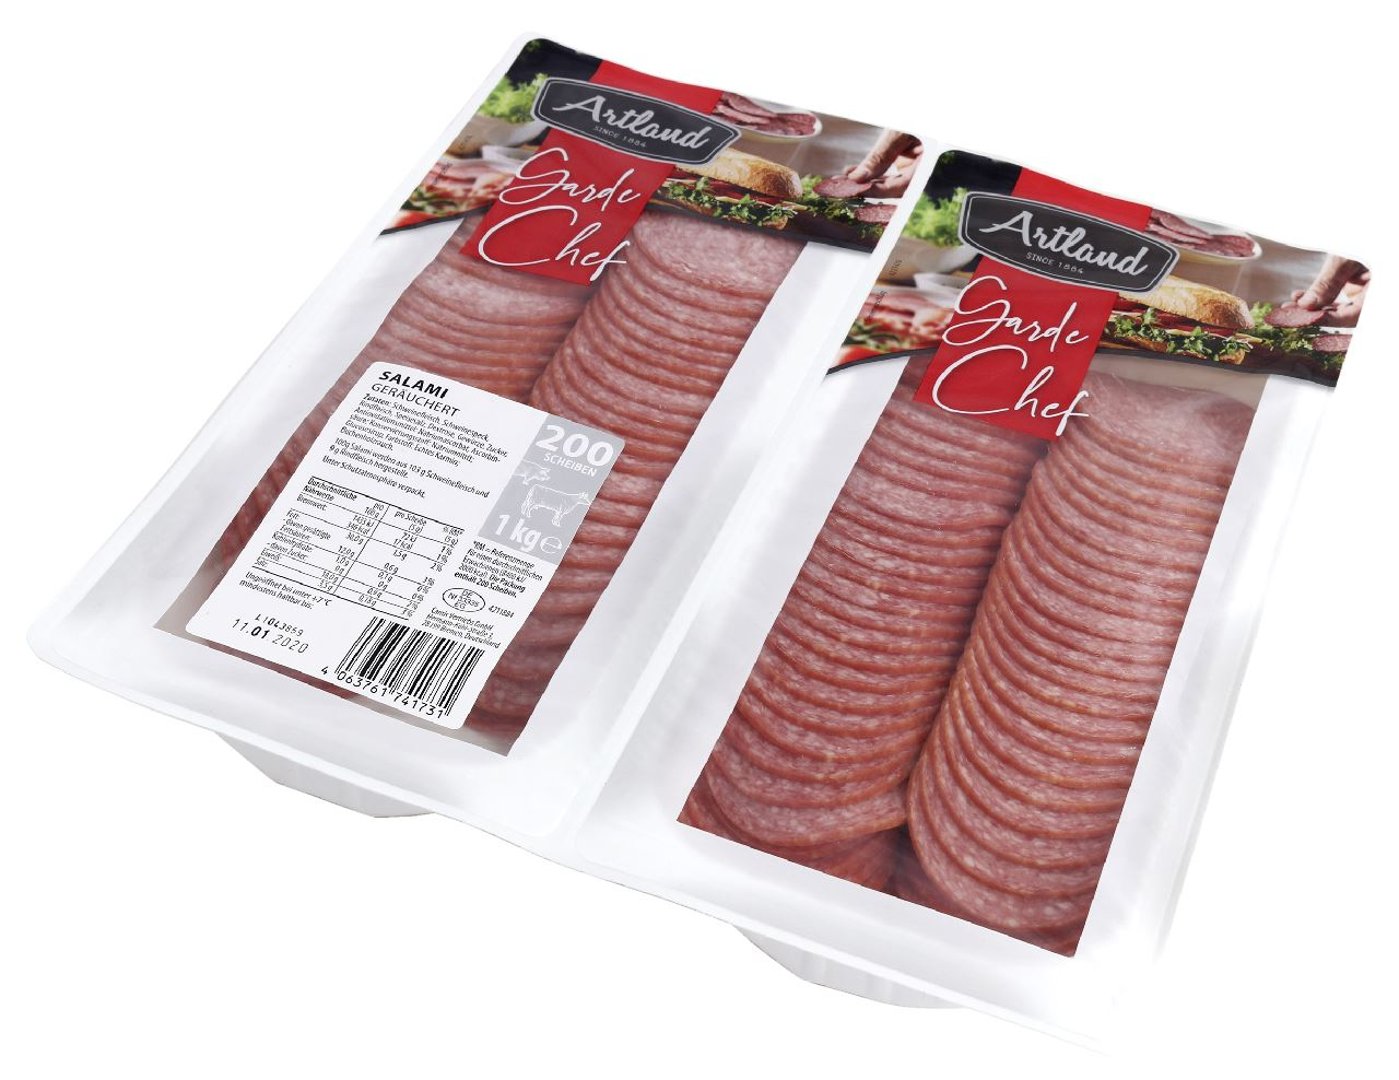 Artland - Salami geschnitten Kal.60 - 1 kg Packung